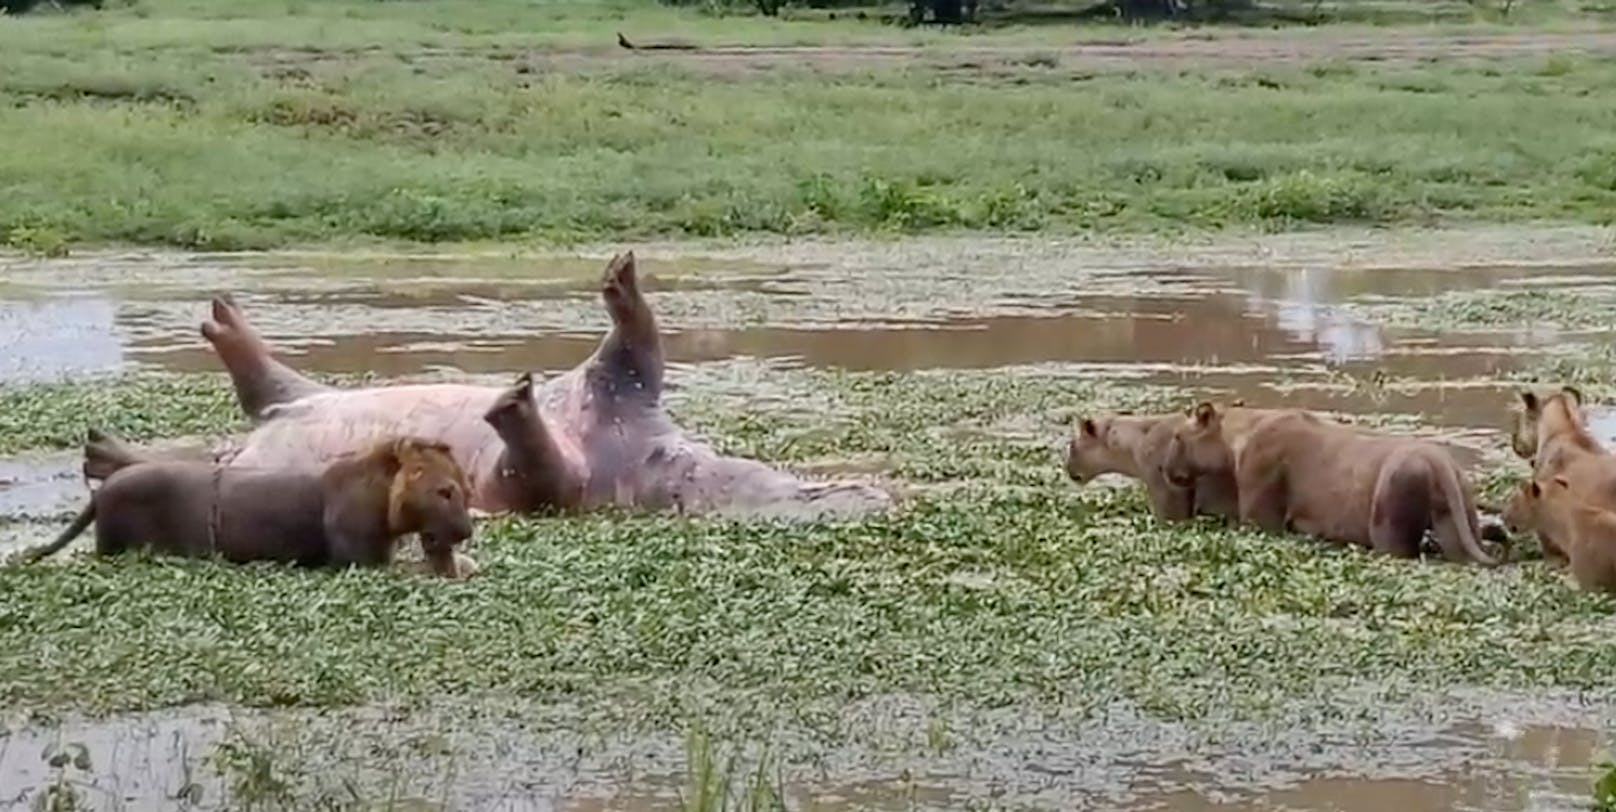 Das Löwenrudel in&nbsp;South Luangwa machte sich gerade über den Kadaver eines Flusspferdes her, da konnte Heike Hochberger etwas wirklich skurriles mit ihrer Kamera festhalten.